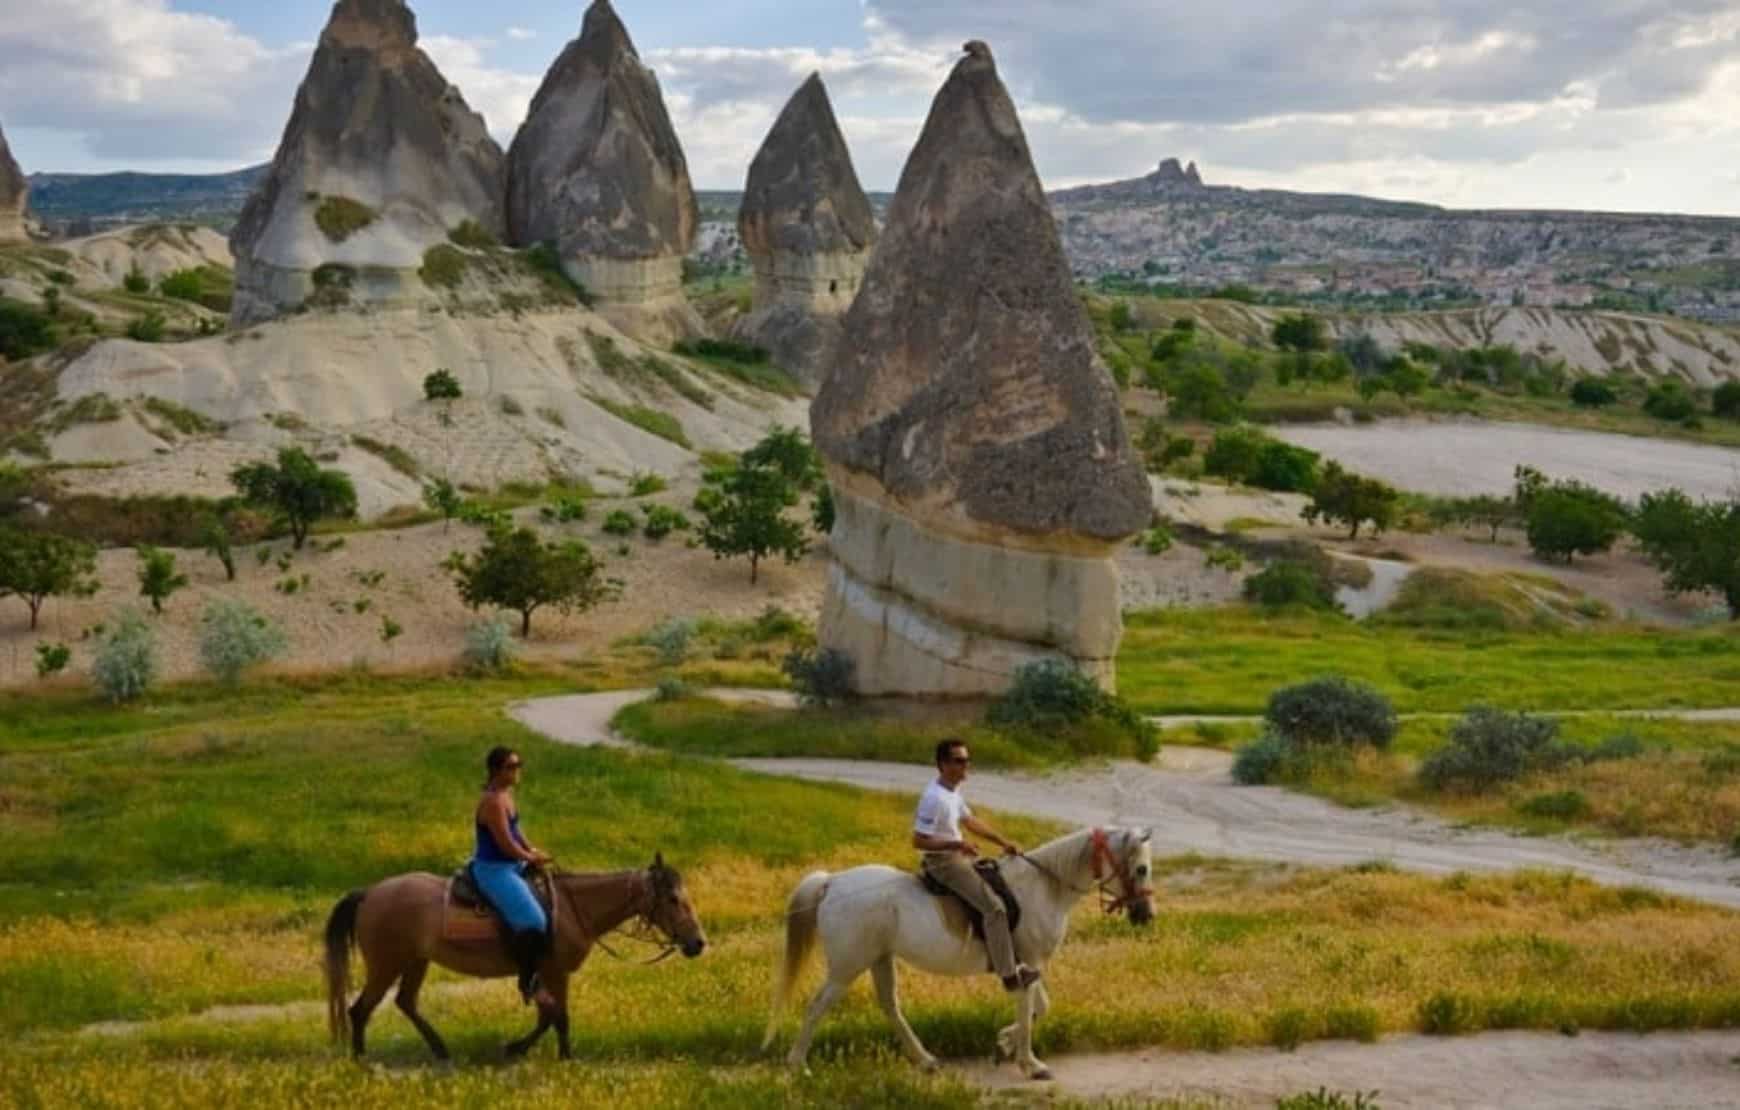 Horse Riding in Cappadocia - horse back riding safari in valleys